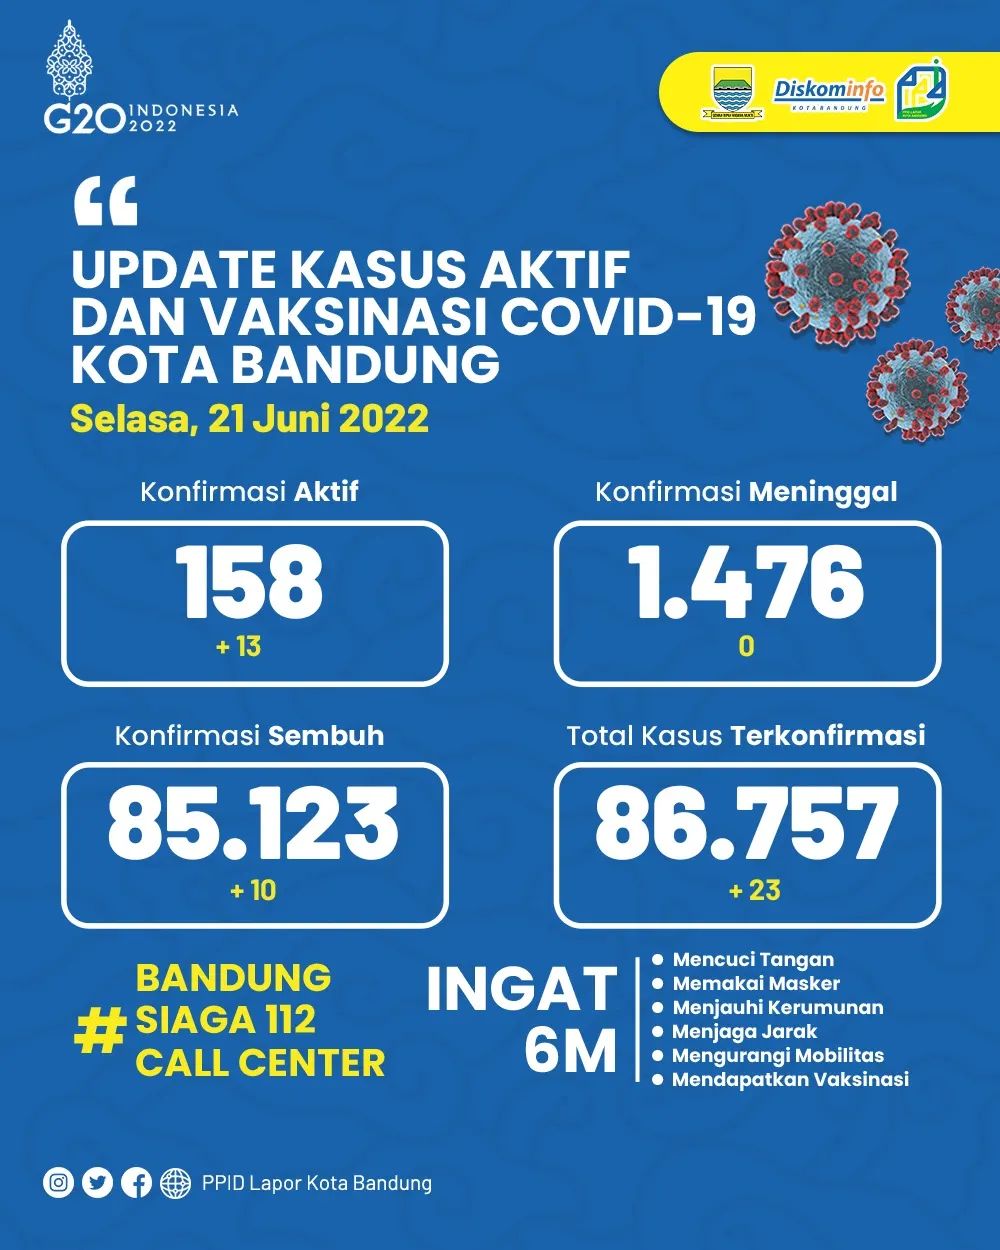 UPDATE STATISTIK COVID-19 DI KOTA BANDUNG PER TANGGAL 21 JUNI 2022